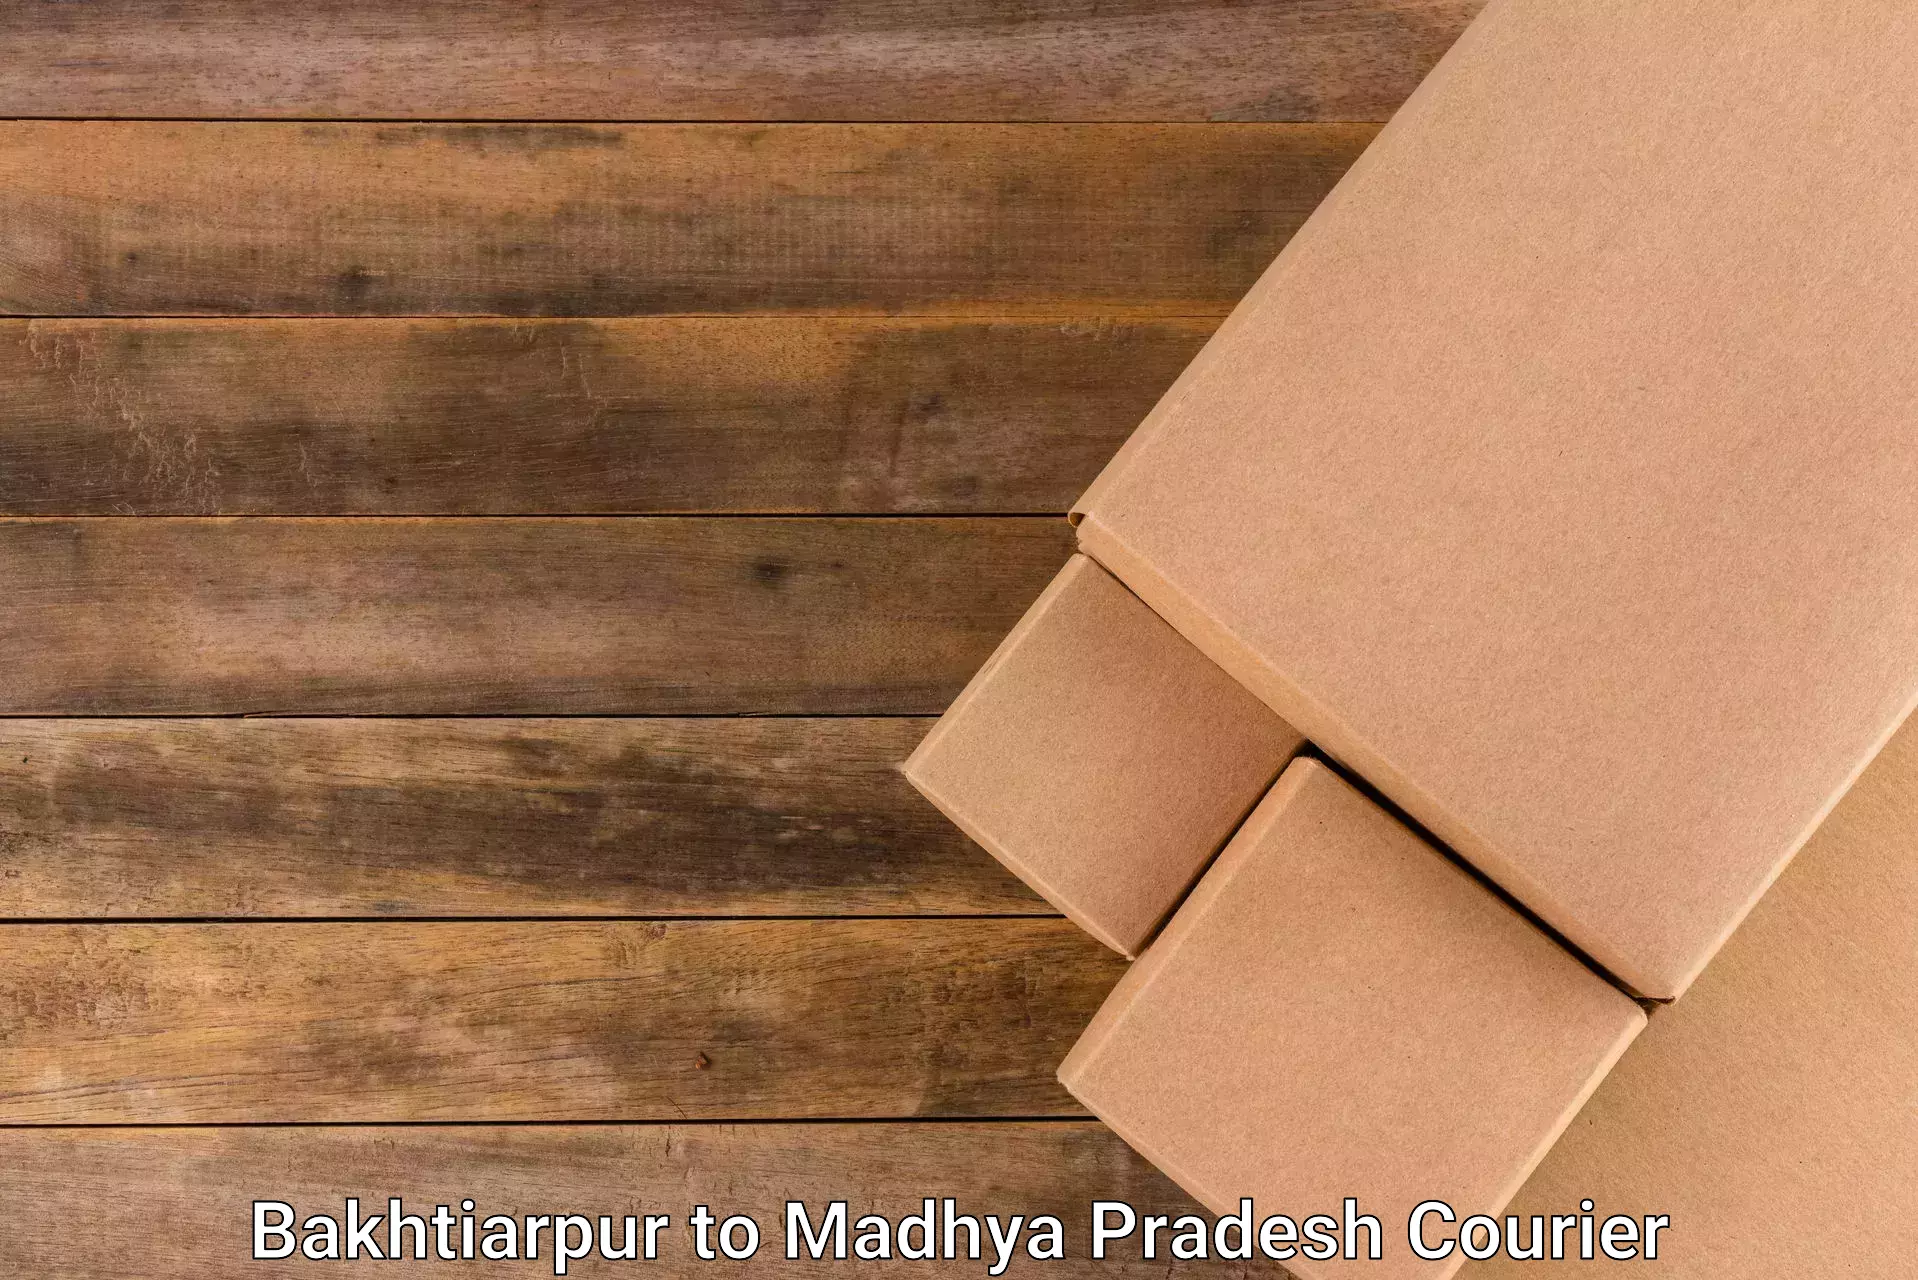 Modern delivery methods Bakhtiarpur to Chhatarpur